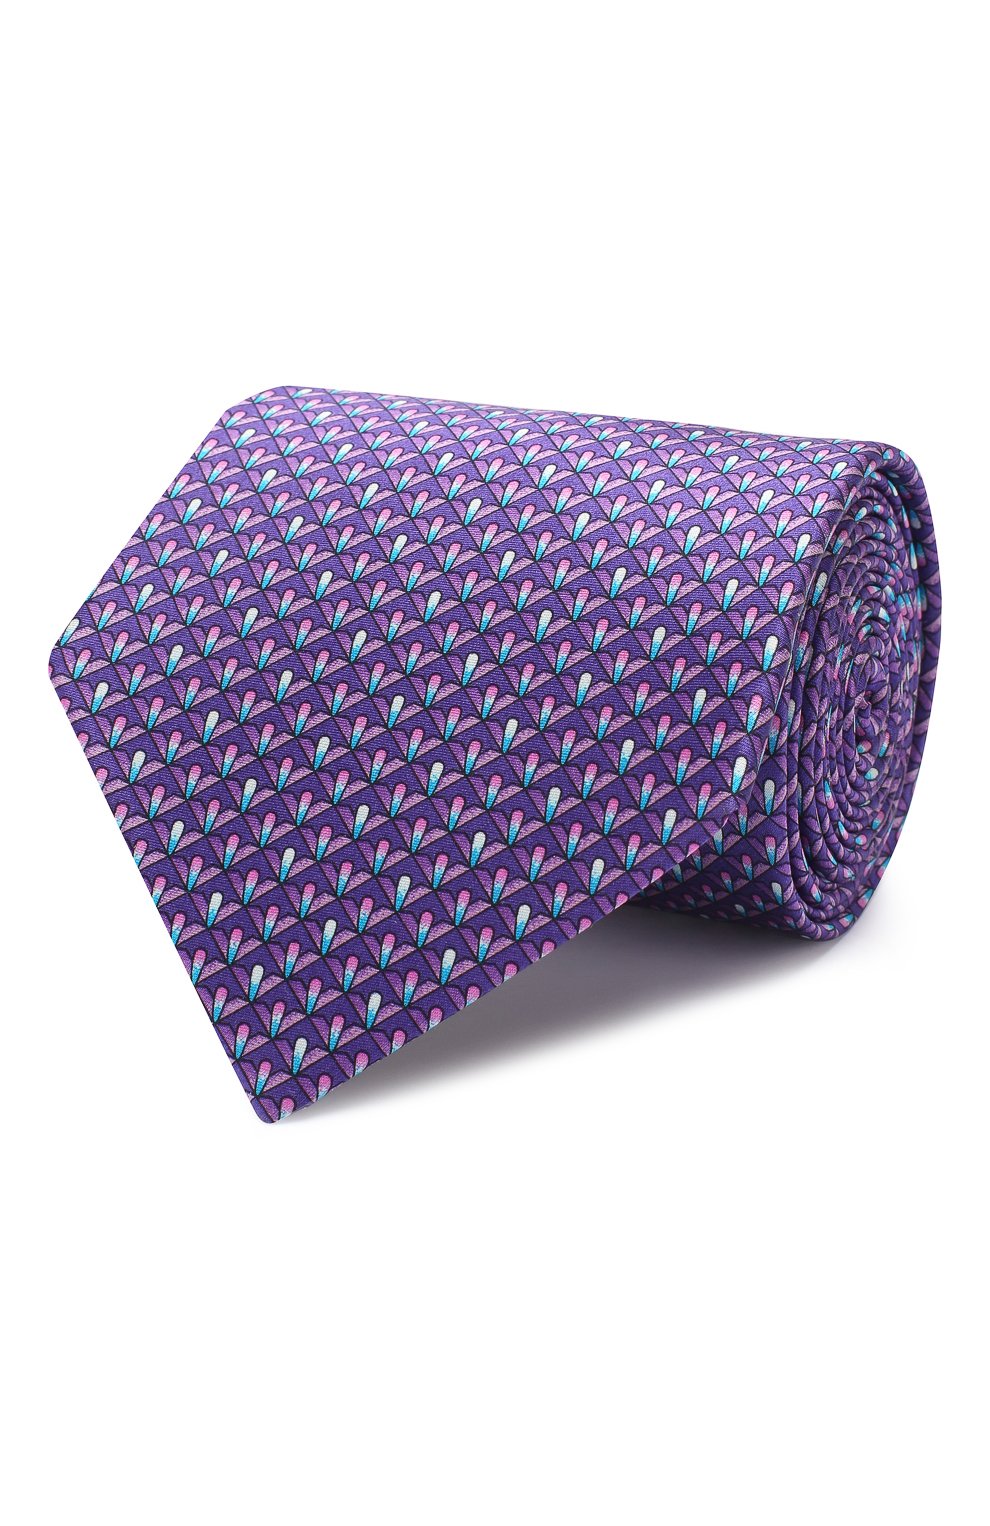 Мужской комплект из галстука и платка LANVIN фиолетового цвета, арт. 4250/TIE SET | Фото 1 (Материал: Текстиль, Шелк)